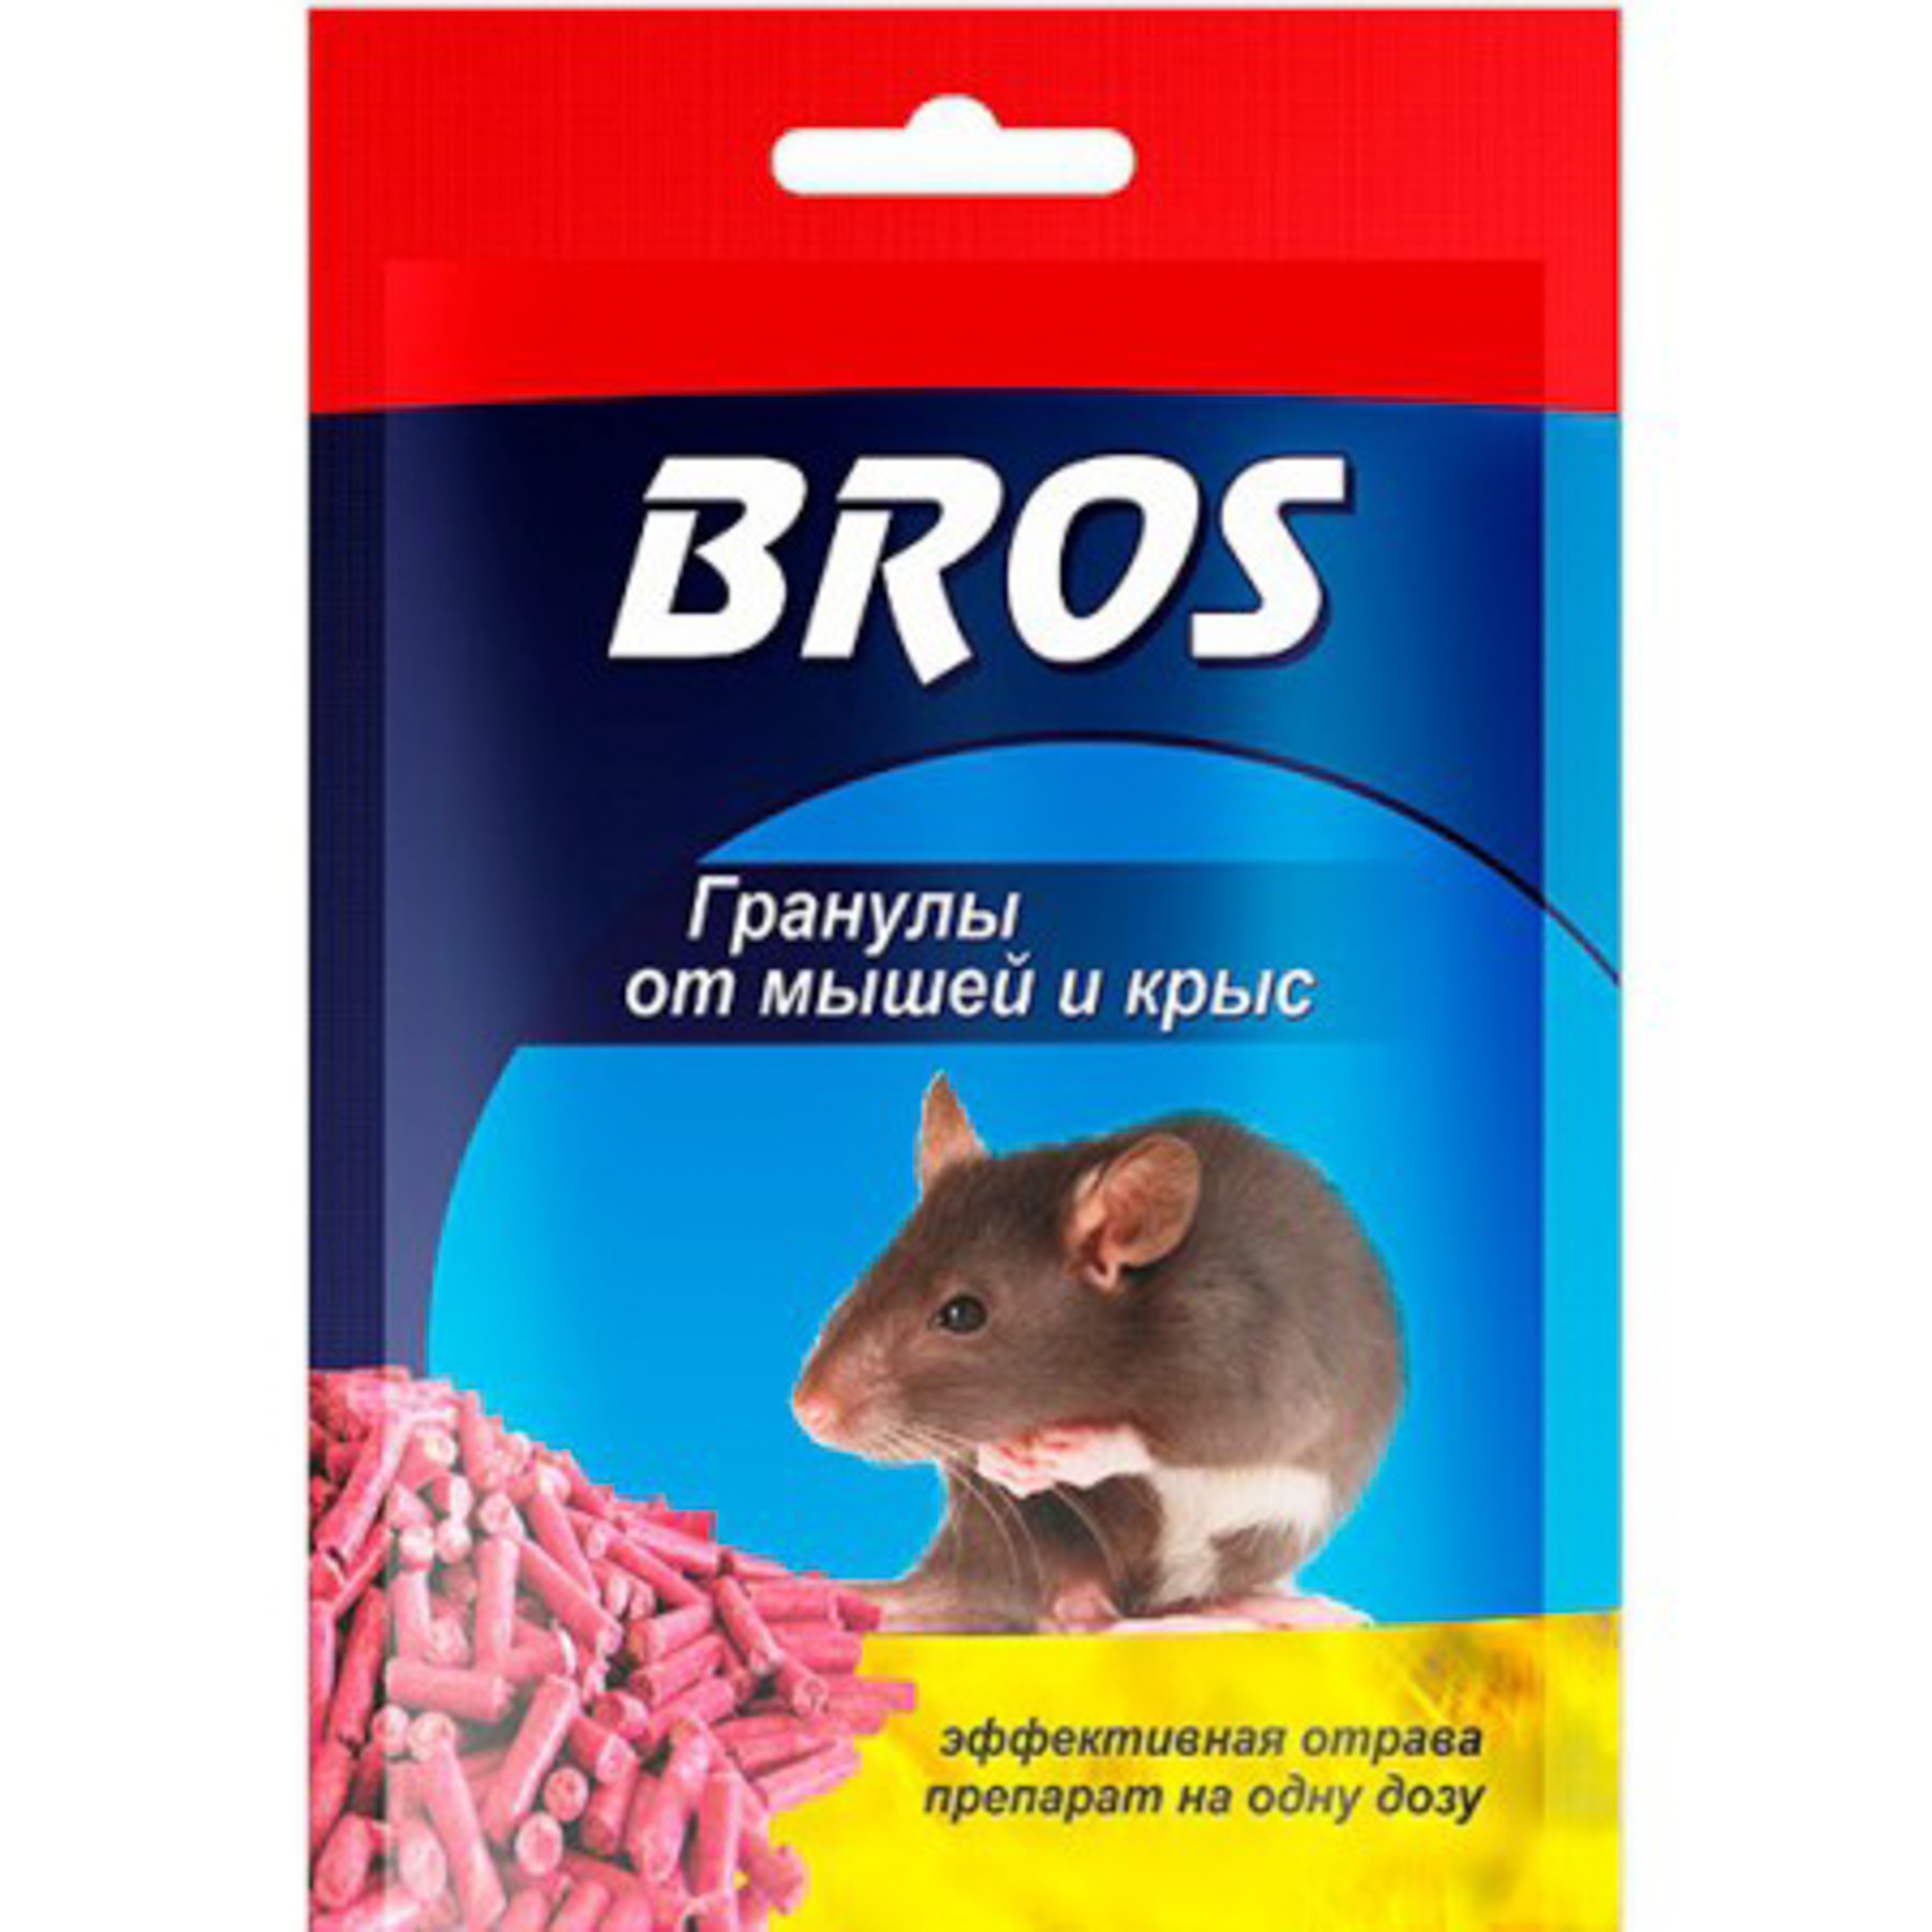 Гранулы BROS от крыс и мышей в пакетике 90 г гранулы от домовых мышей alt